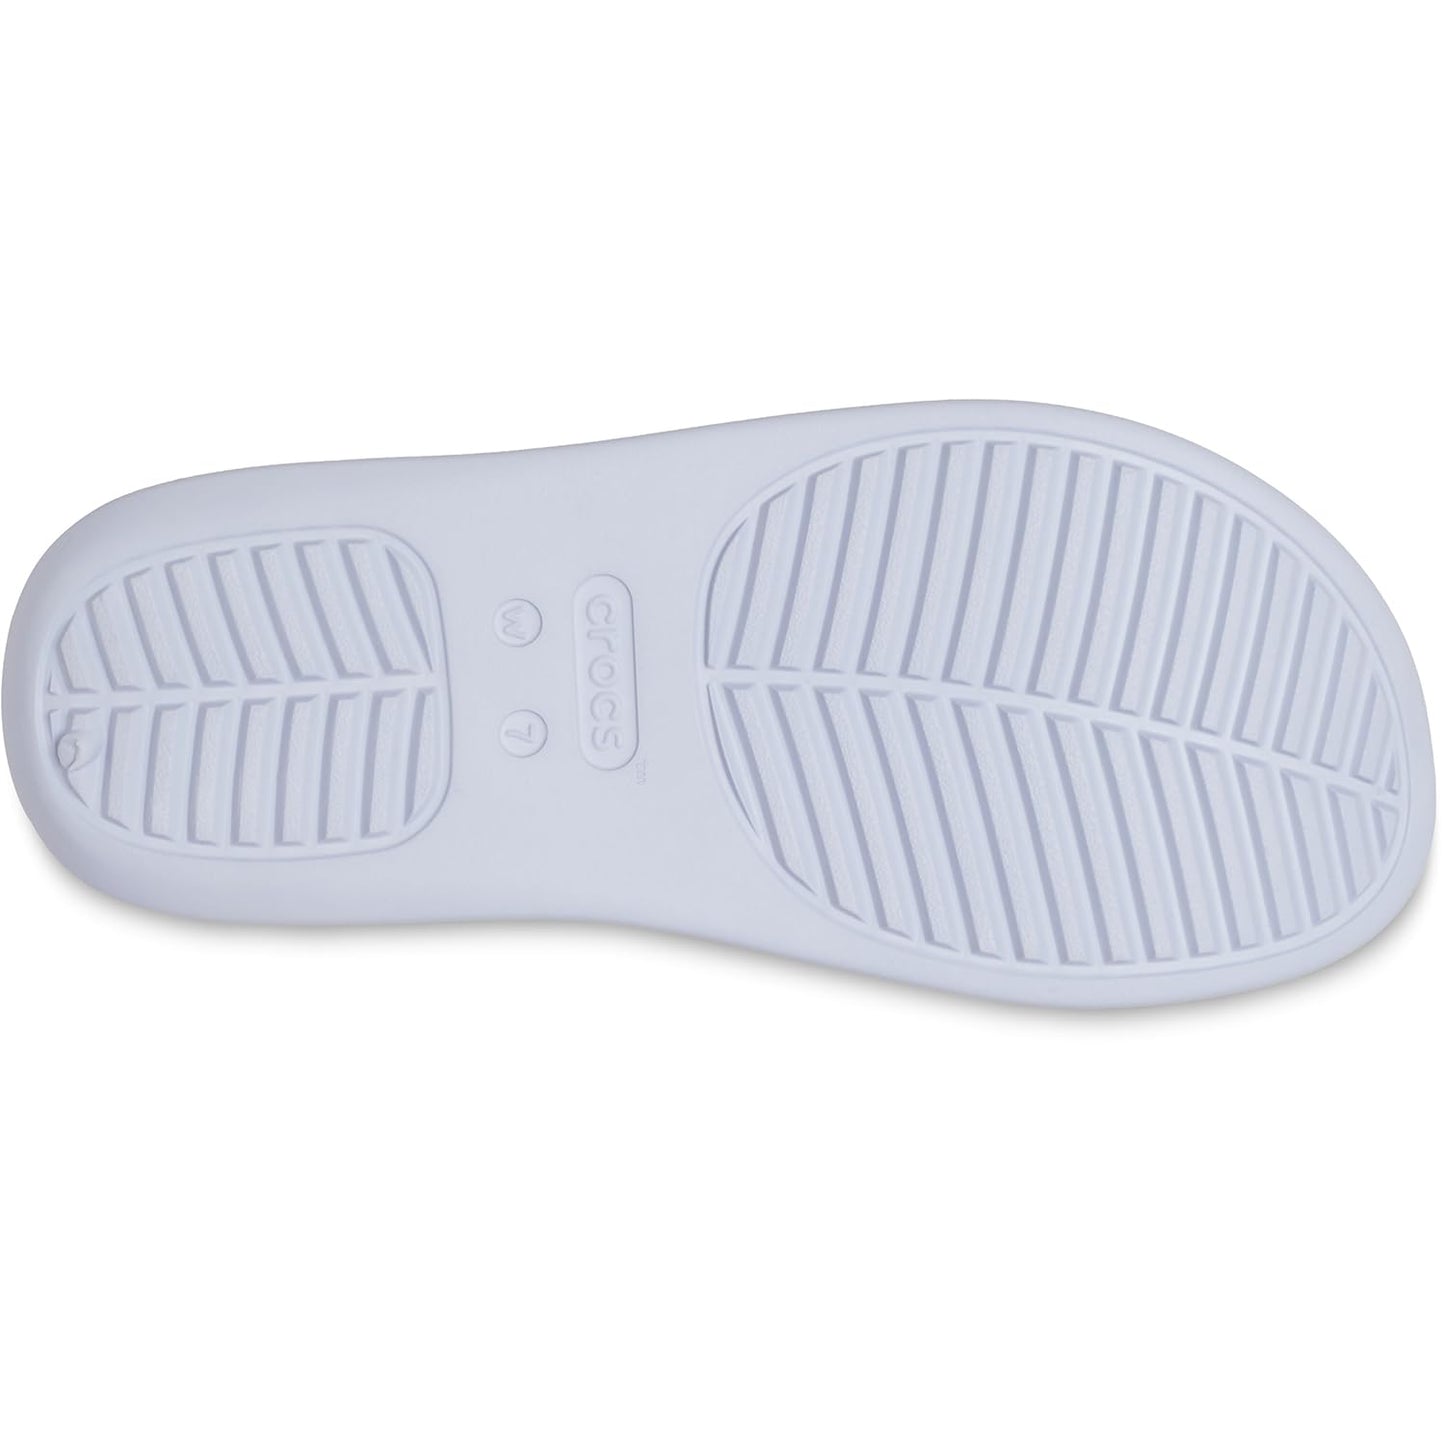 Crocs Women Getaway Platform Flip Flops, Wedge Sandals for Women, Dreamscape, 4 Women